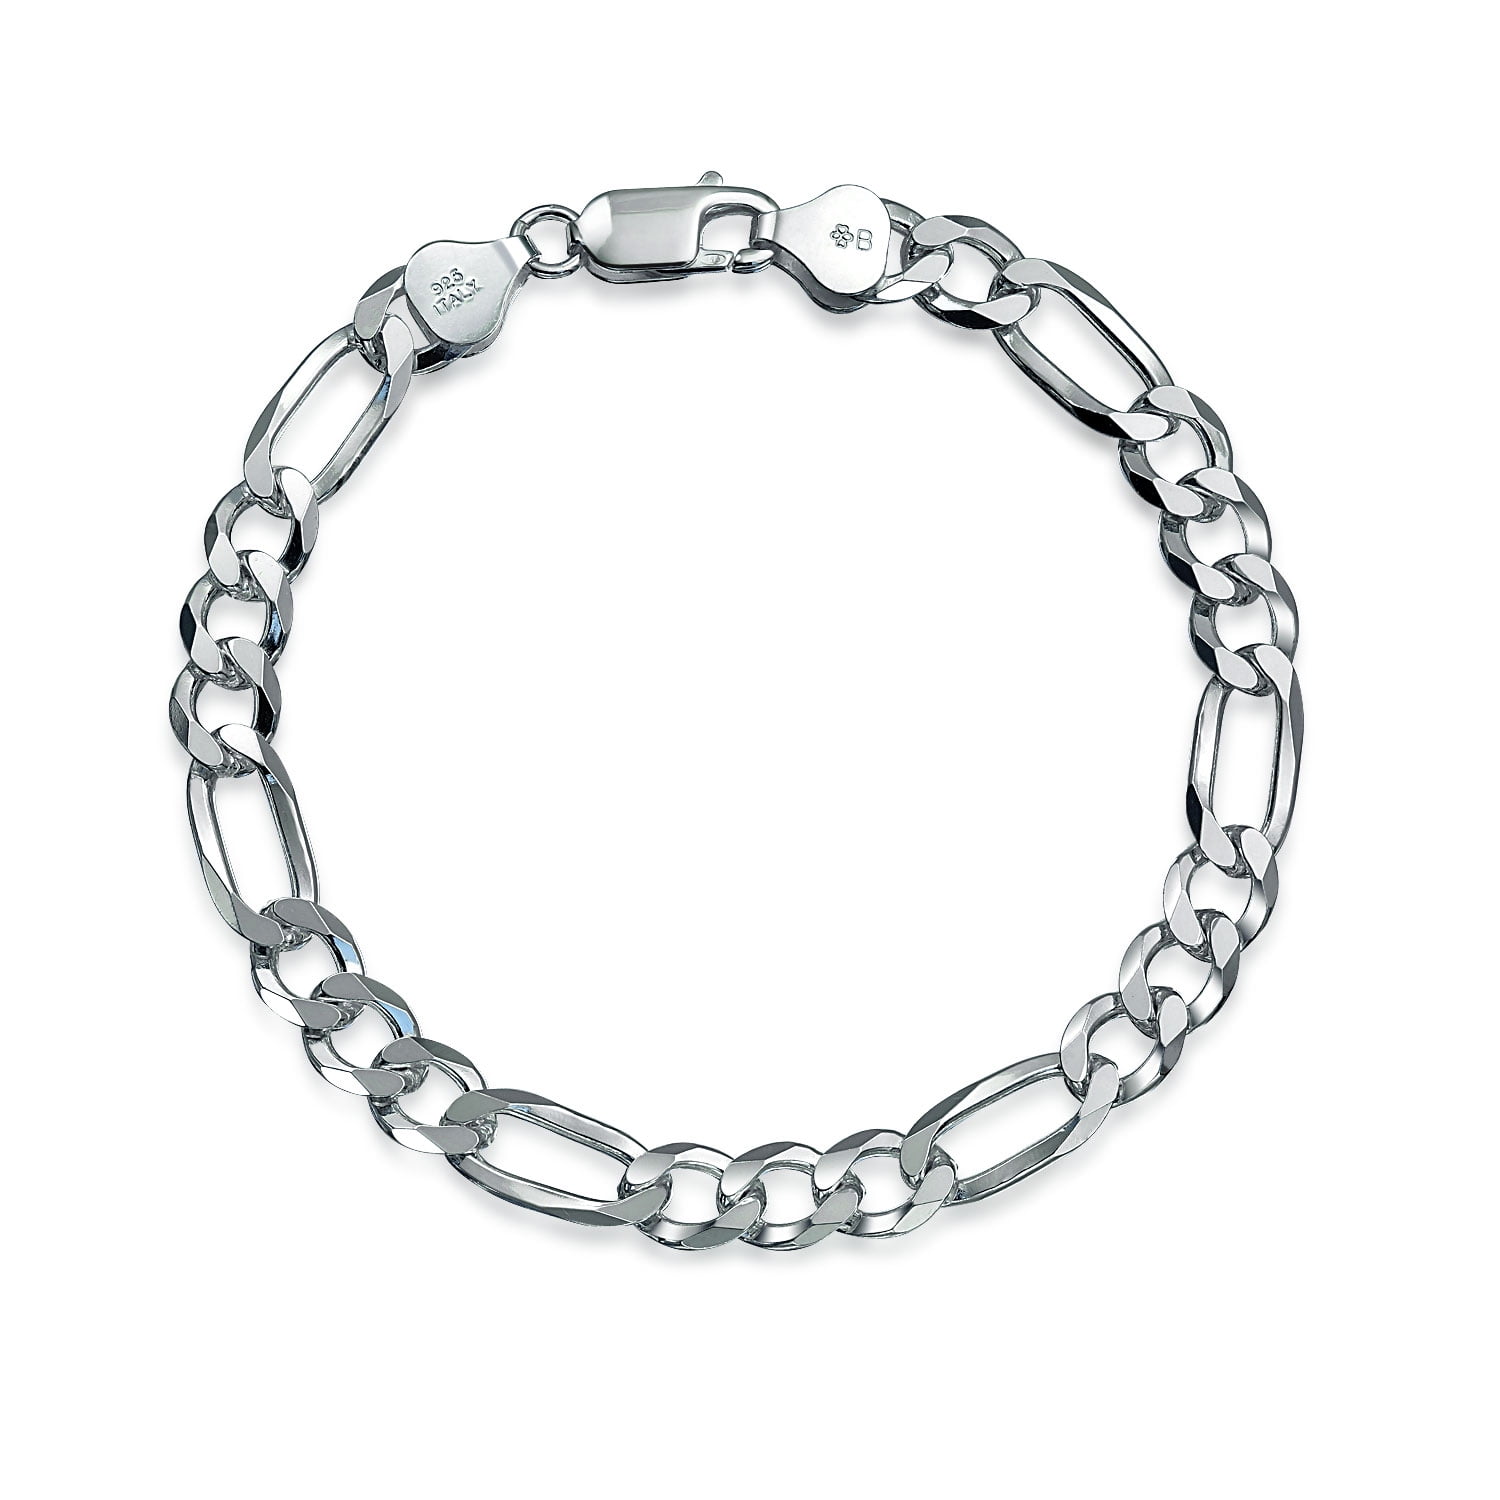 Men's Silver Bracelets in Men's Bracelets - Walmart.com